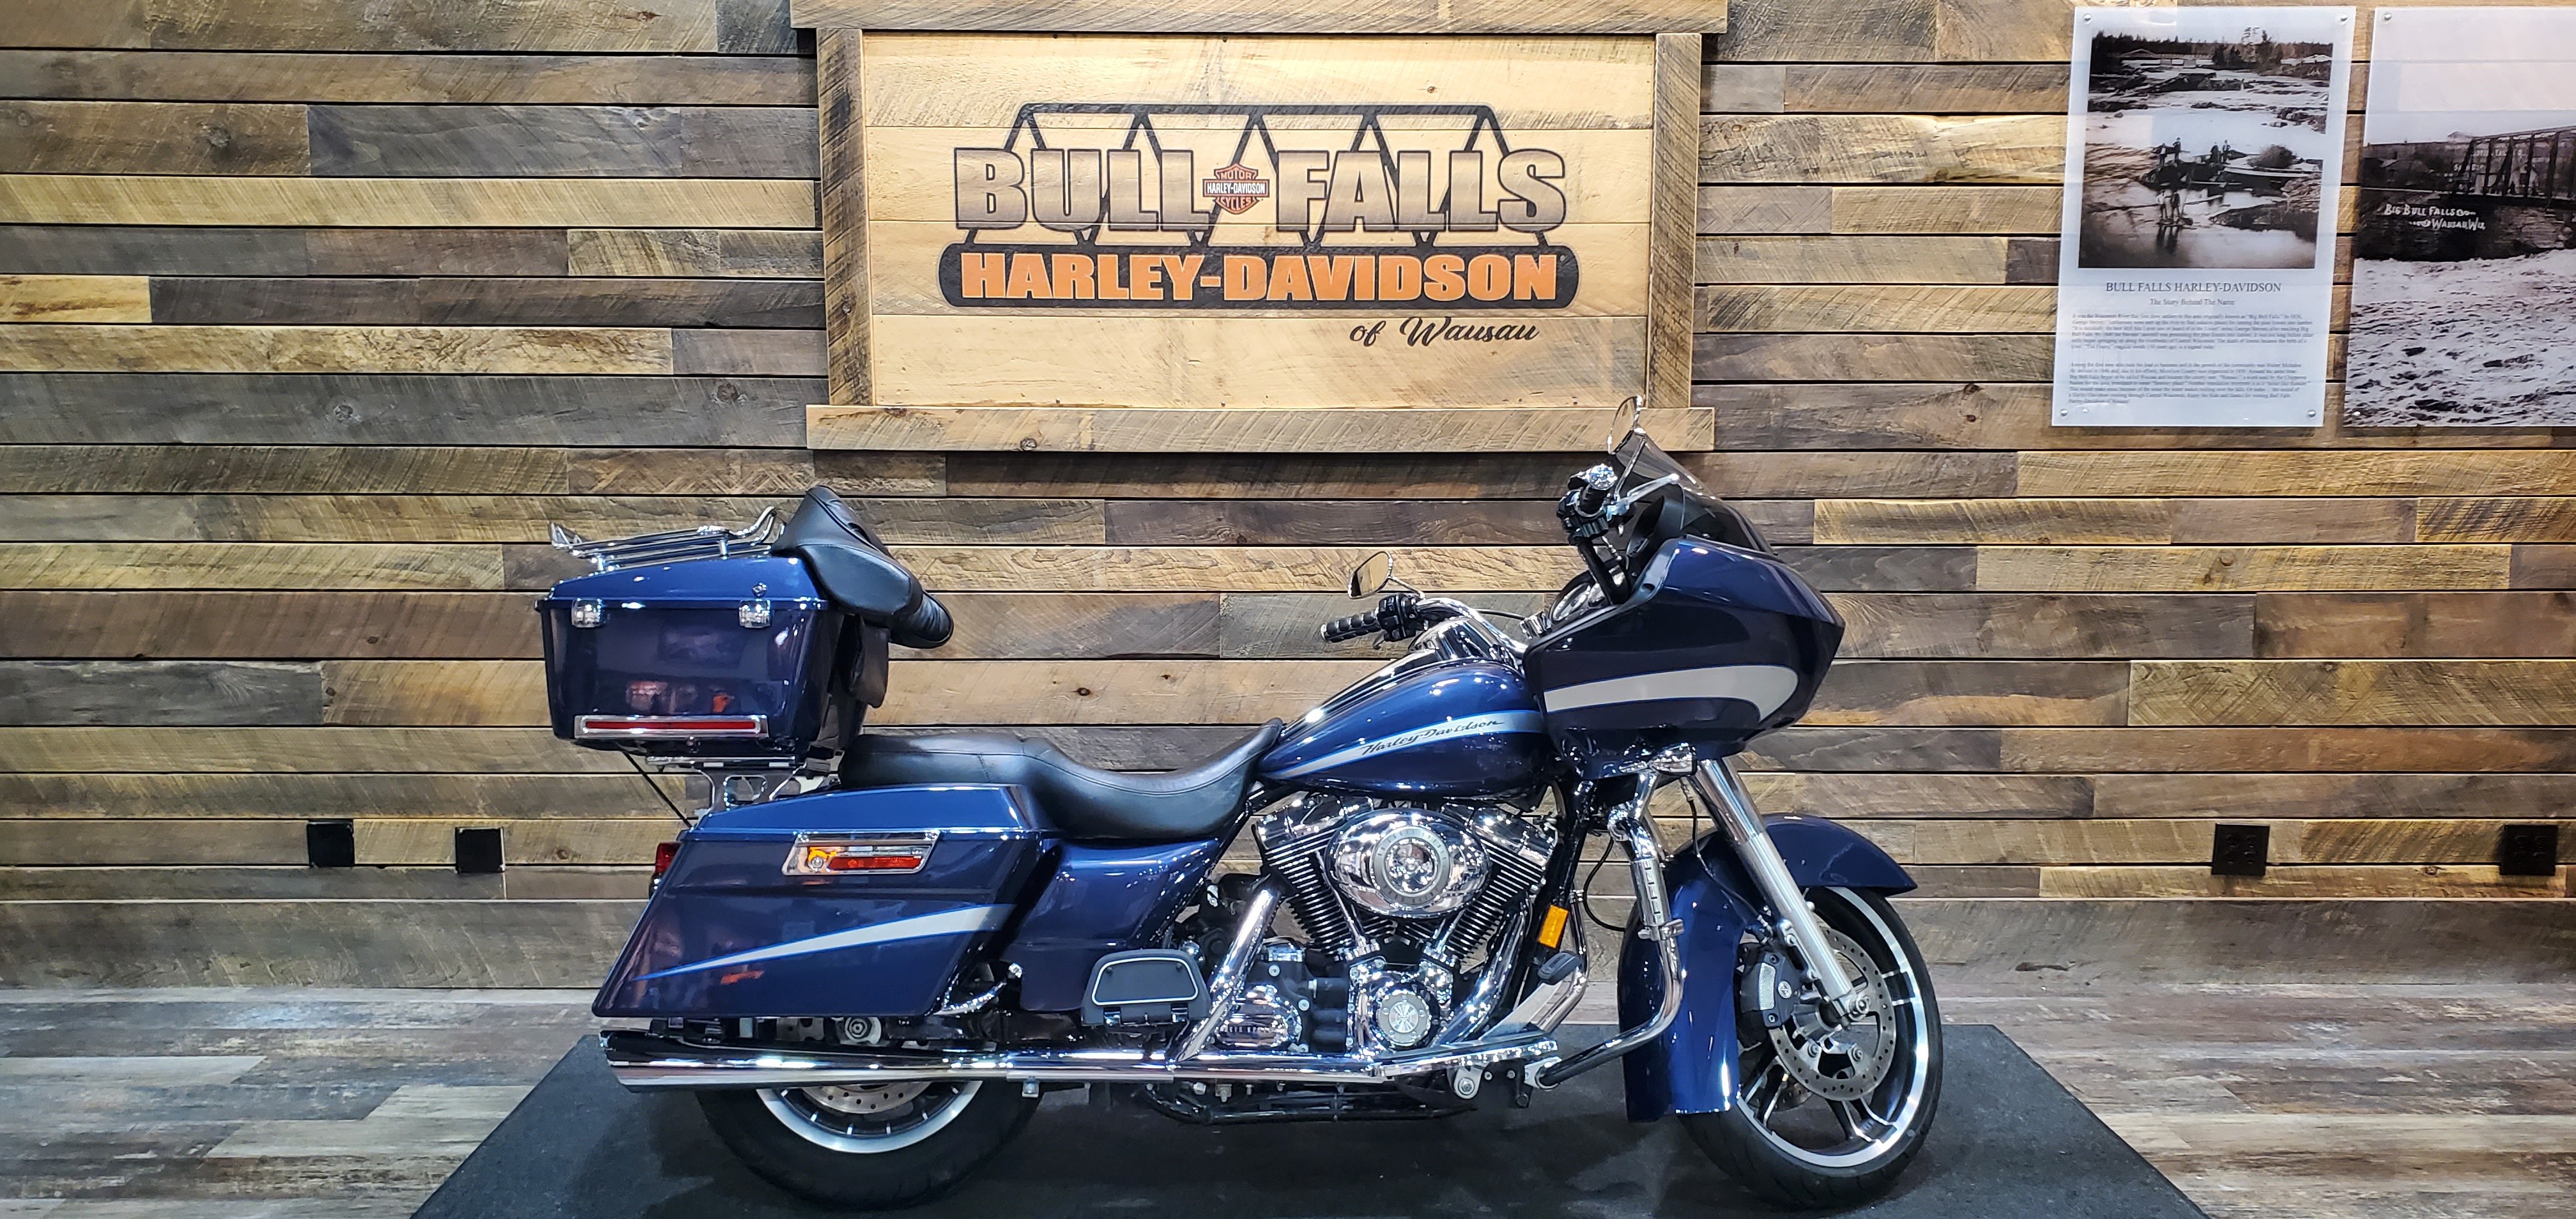 2008 Harley-Davidson Road Glide Base at Bull Falls Harley-Davidson